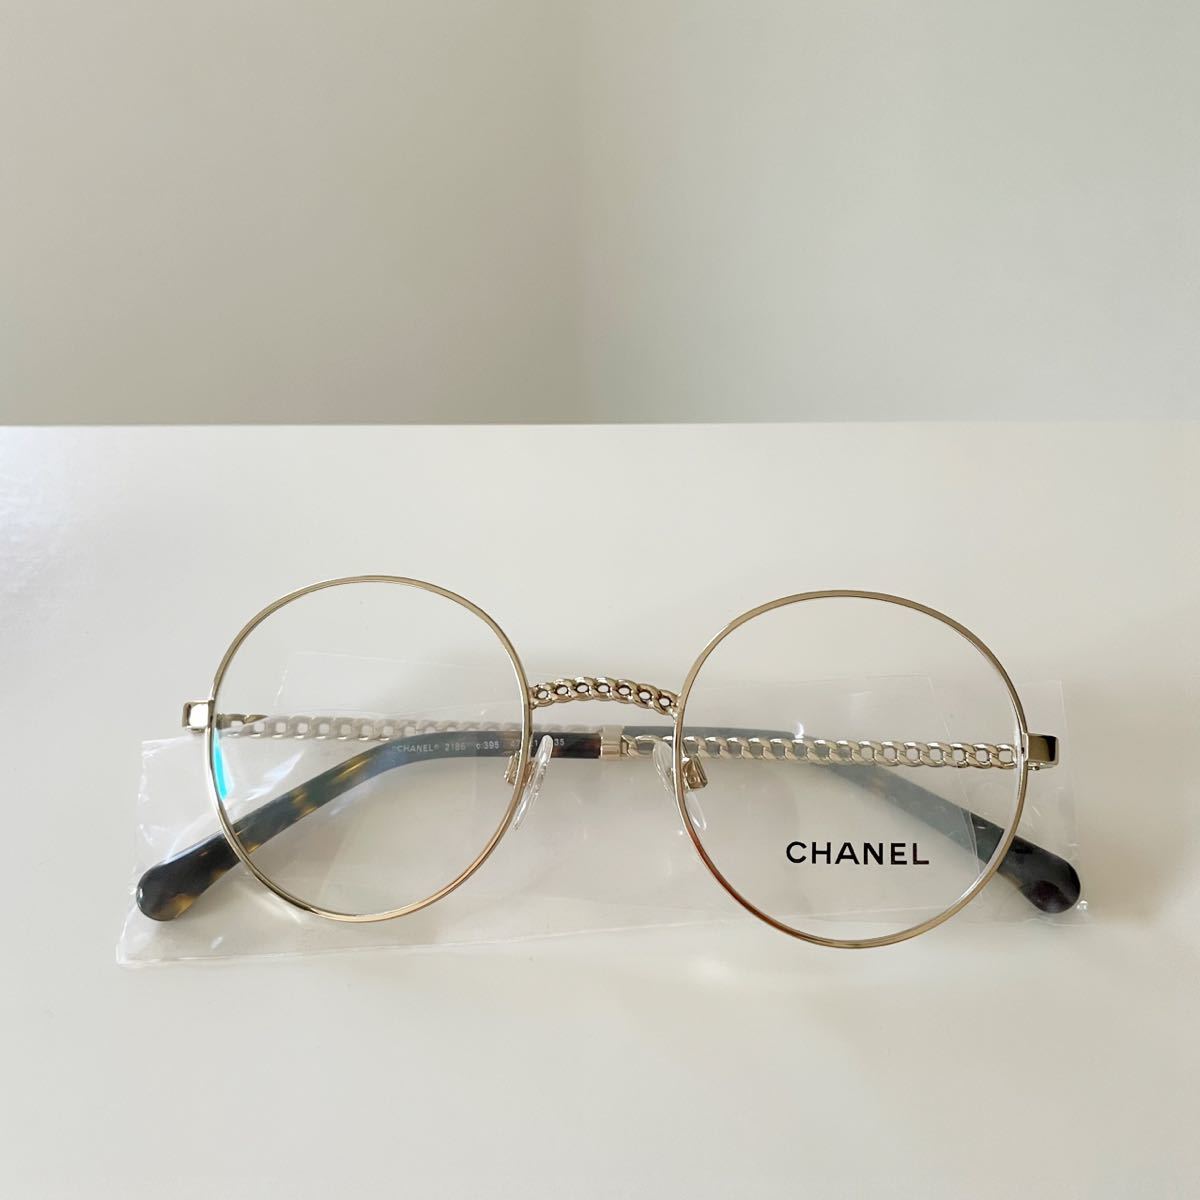 22440円 割引クーポン 値下げ シャネル CHANEL 眼鏡フレーム ケース付 新品